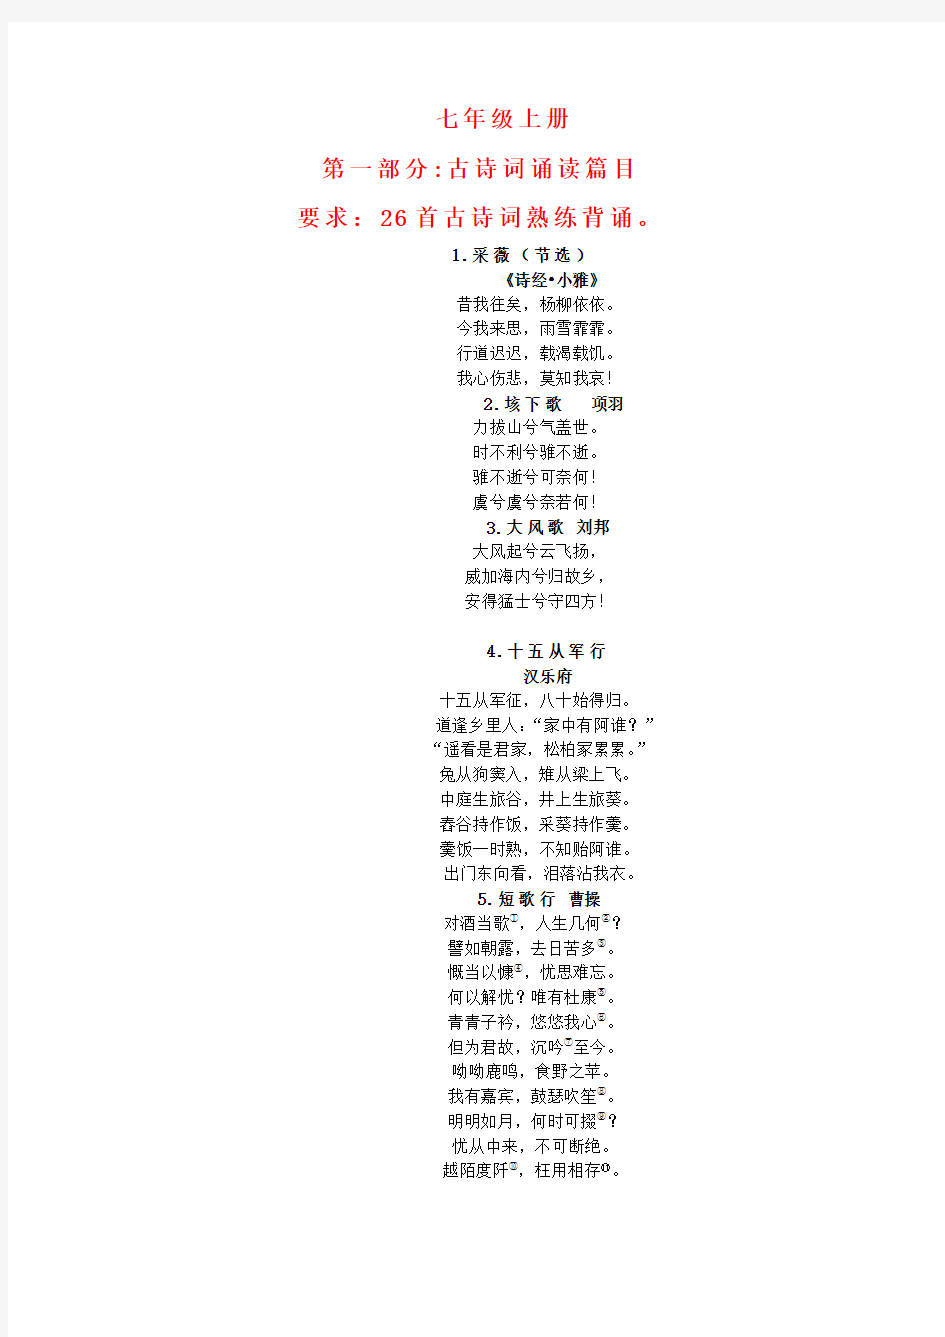 宁阳县七年级上册国学经典诵读内容